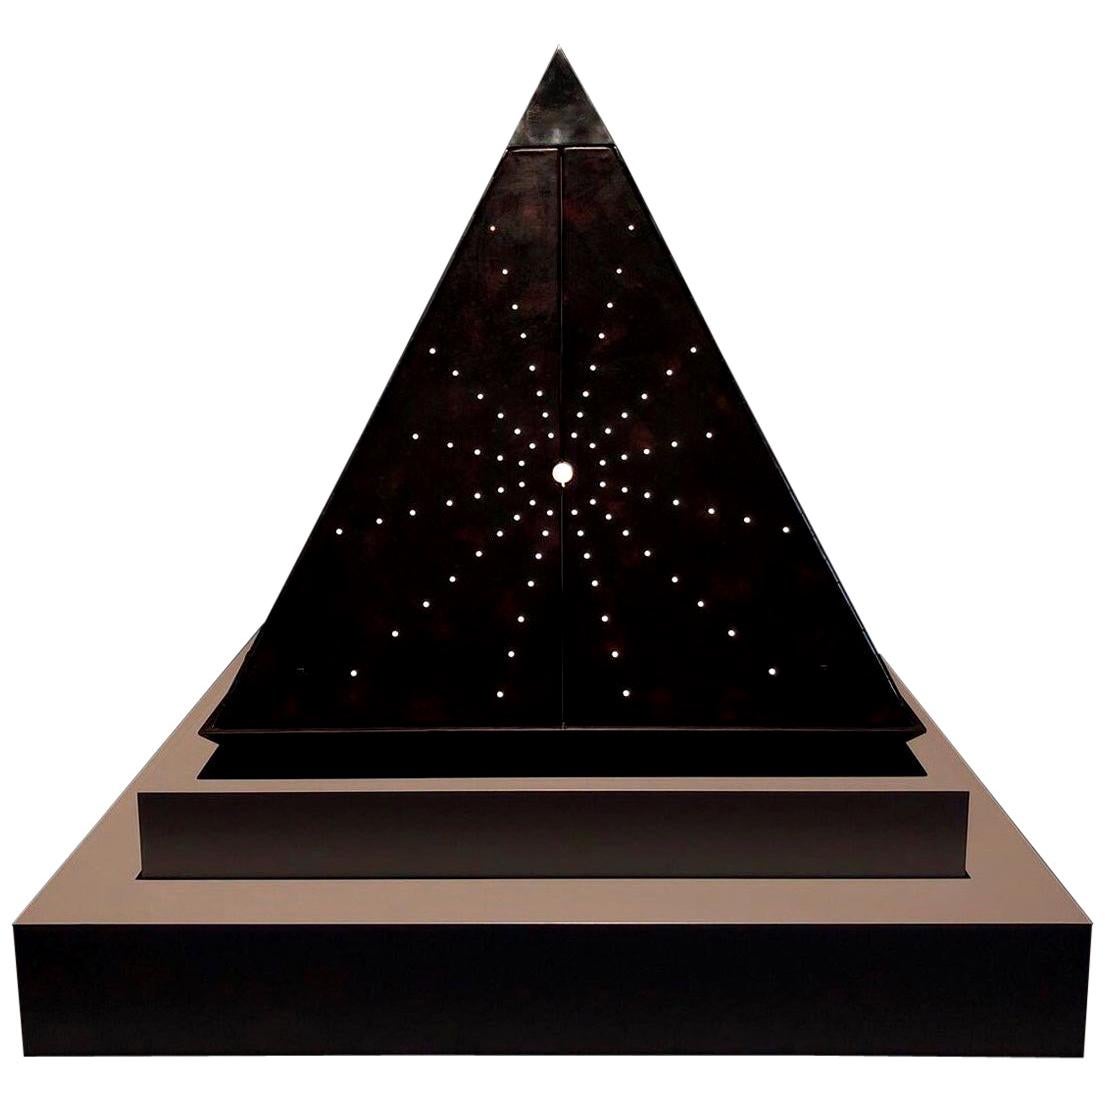 Oscar Tusquets Zeitgenössische Starry-Pyramide aus Leder Limitierte Auflage